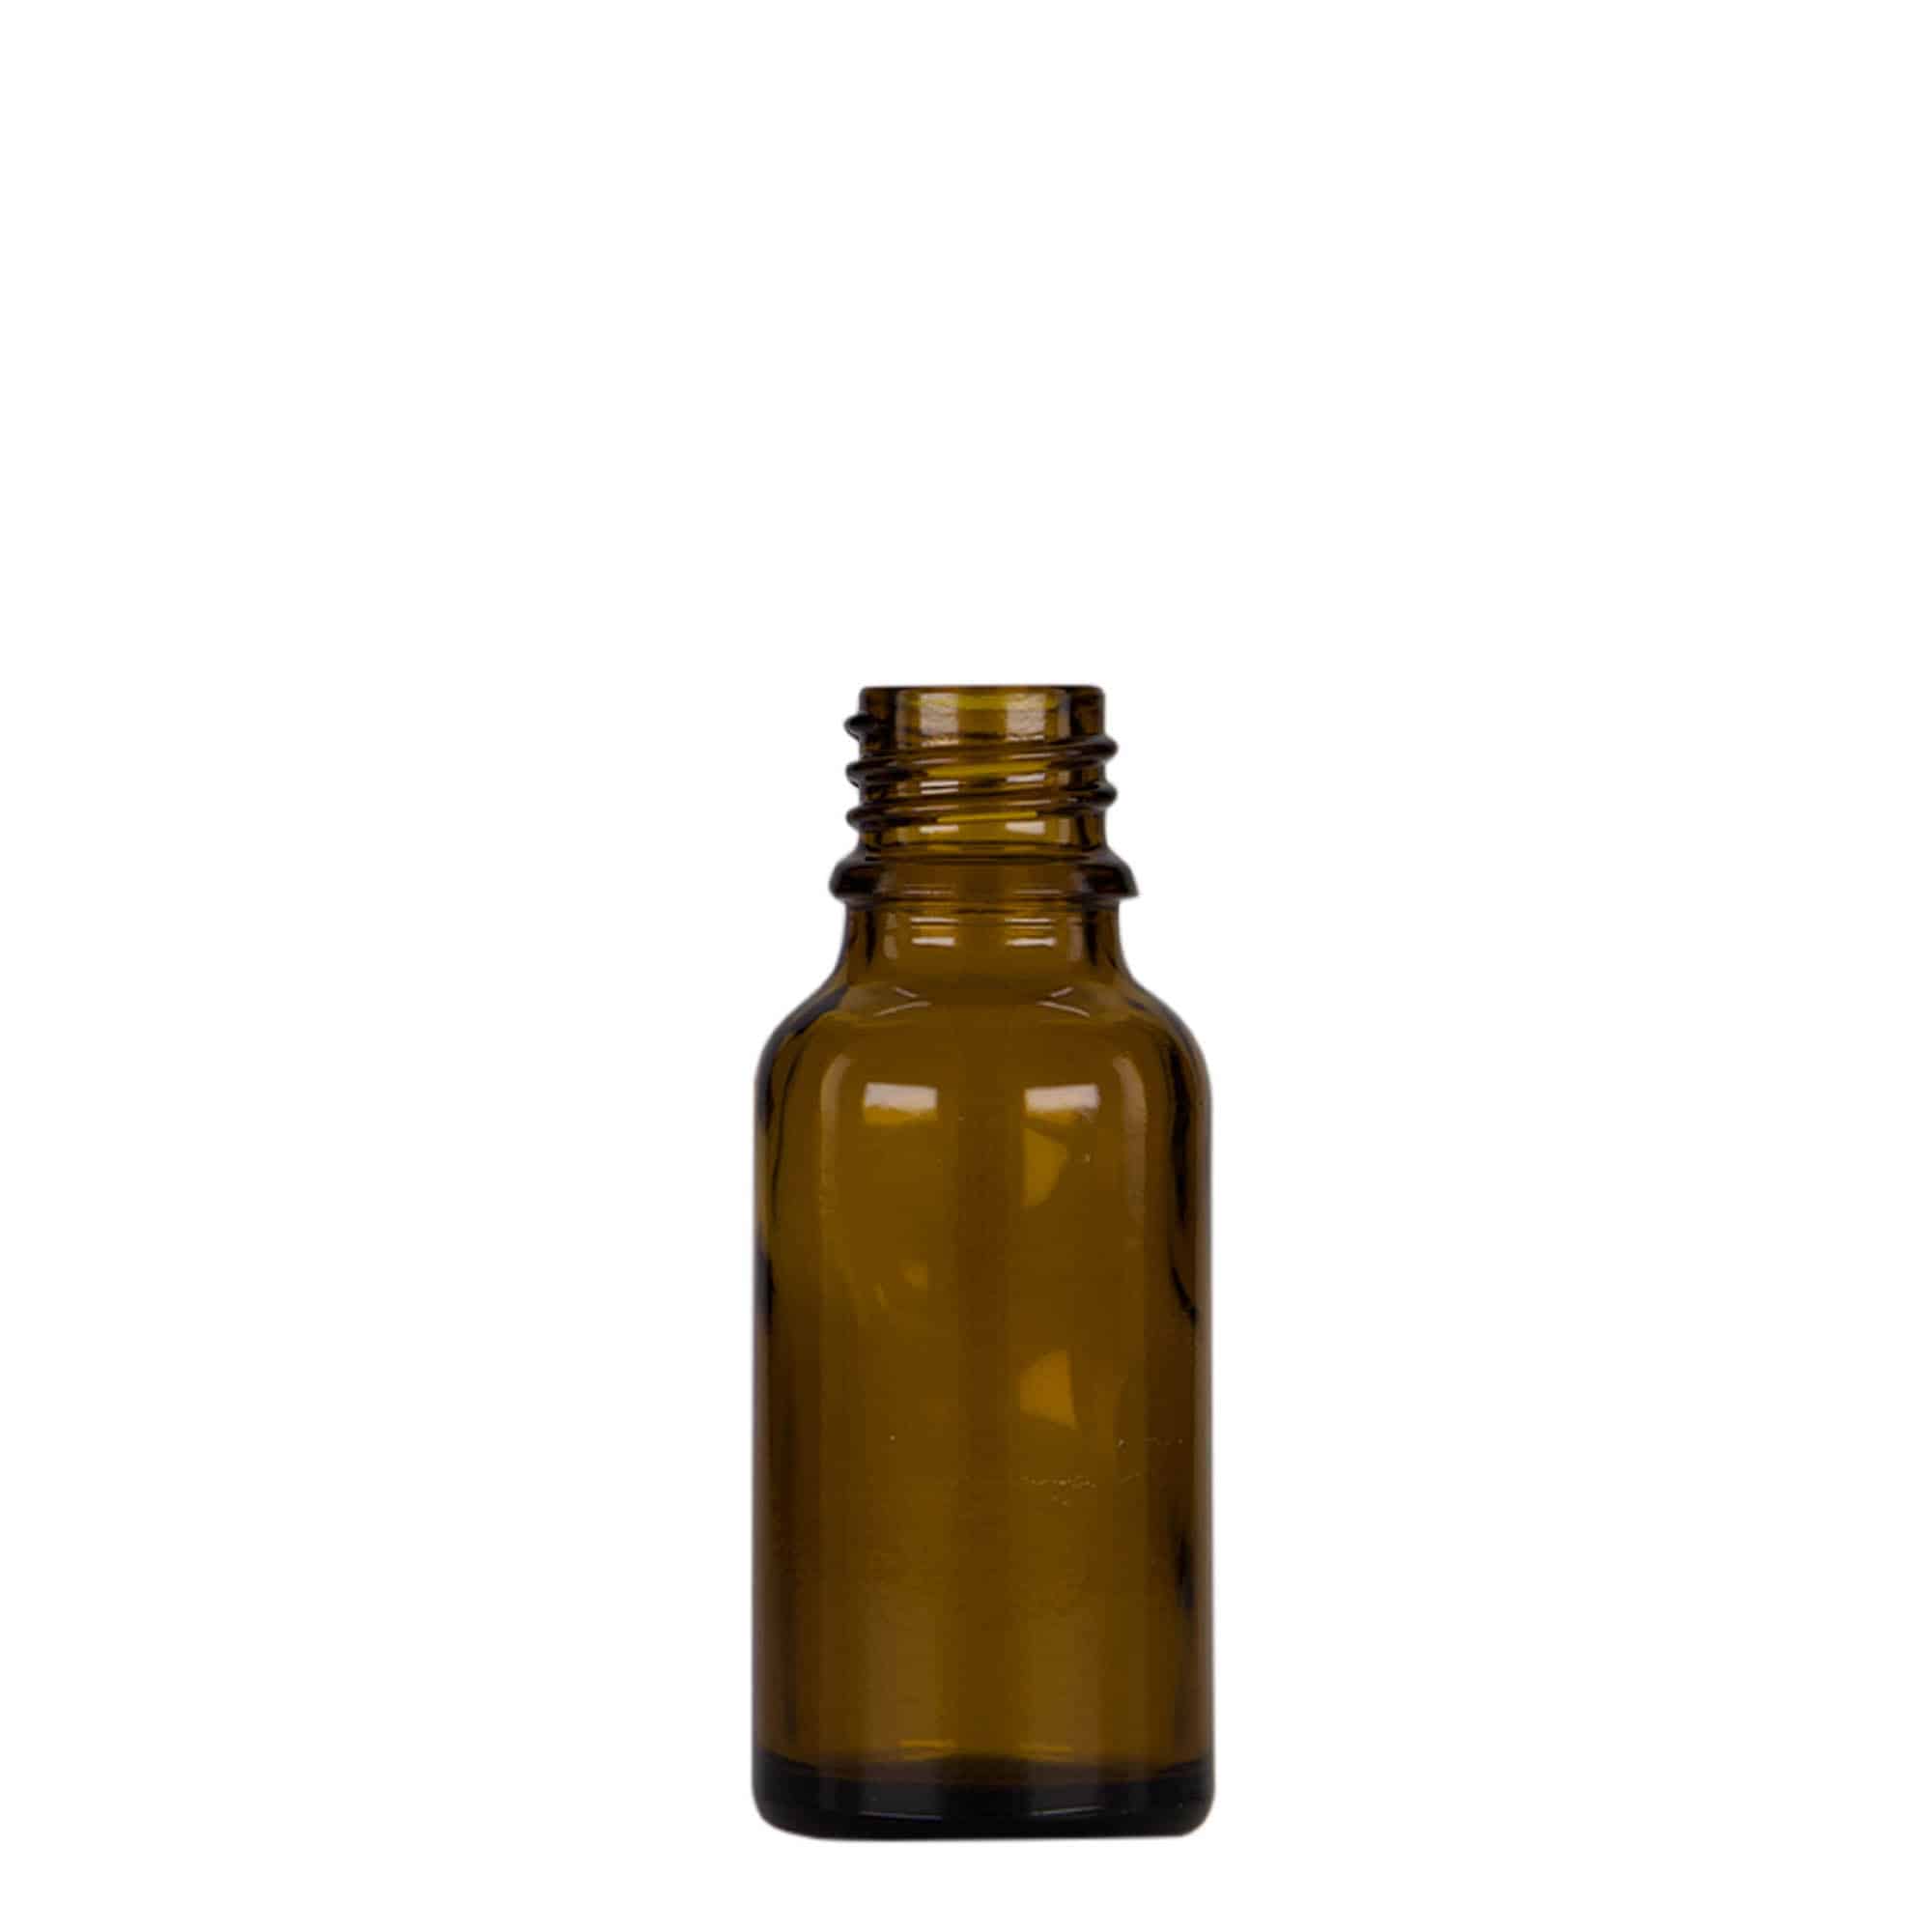 20 ml medicine pipette bottle, glass, brown/black, closure: DIN 18